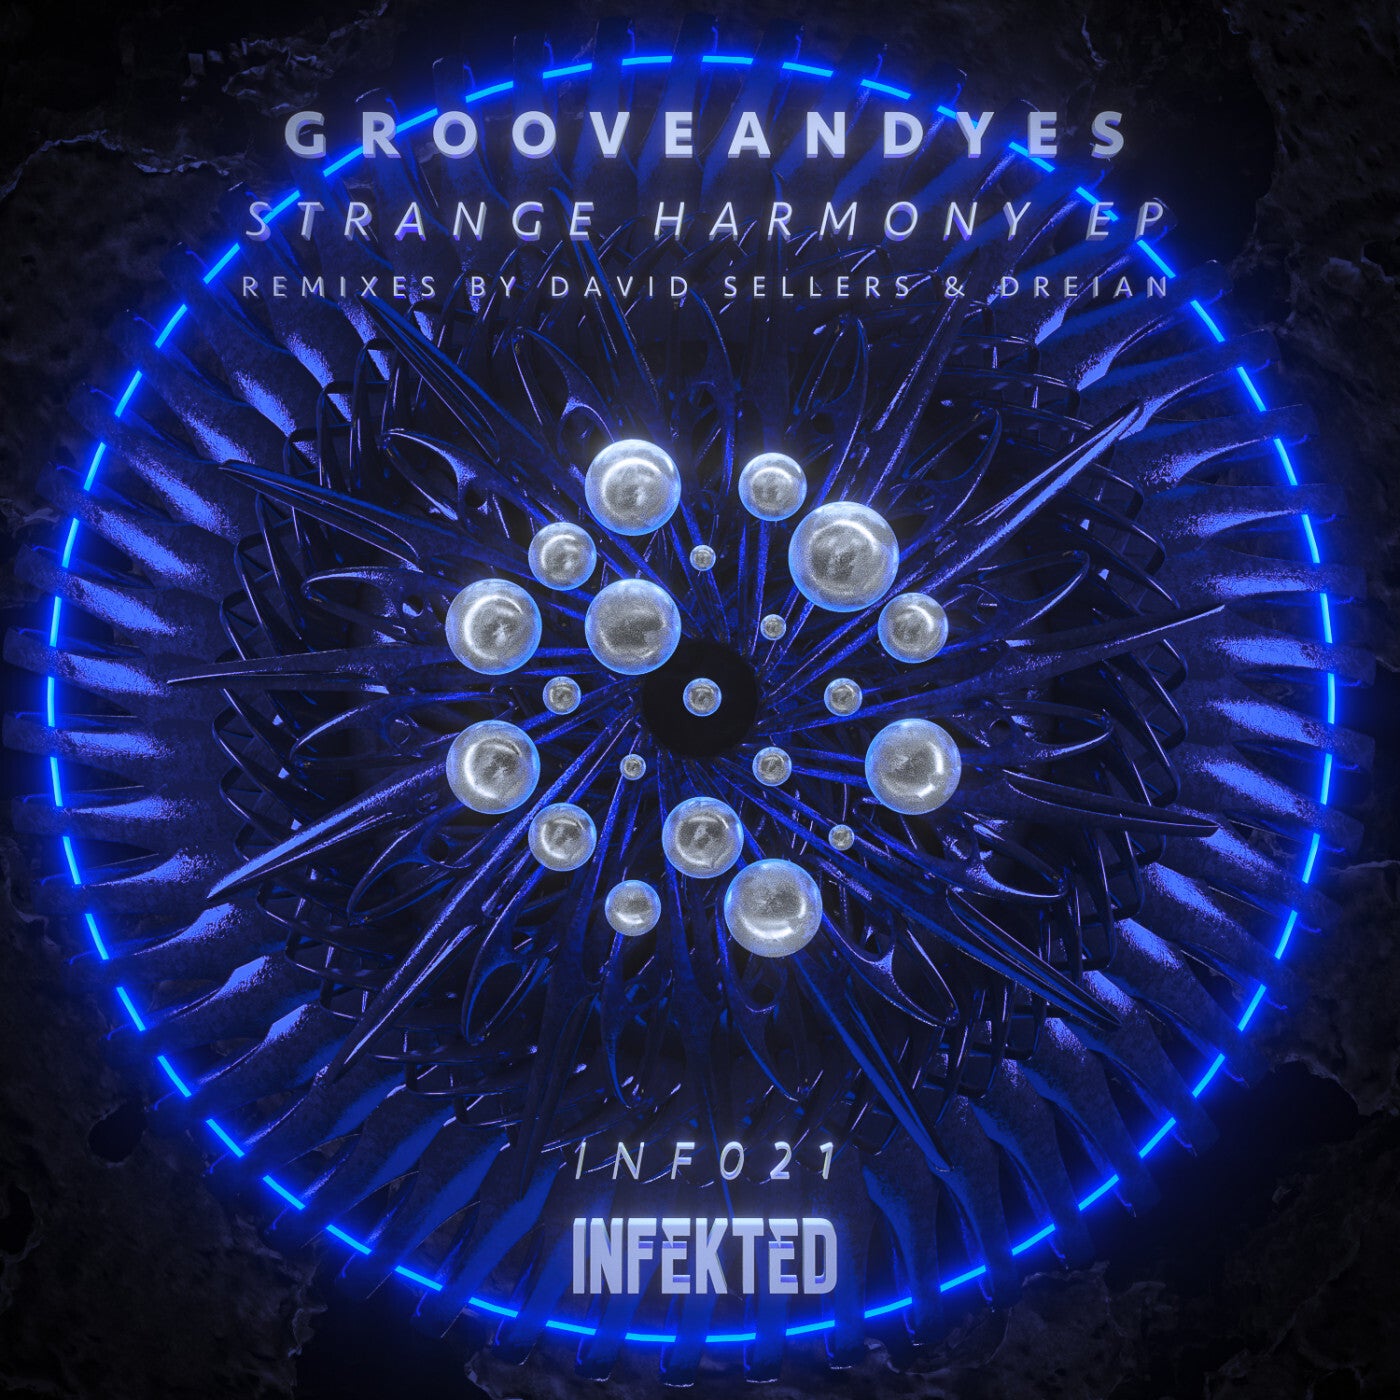 Grooveandyes - Strange Harmony [INF021]